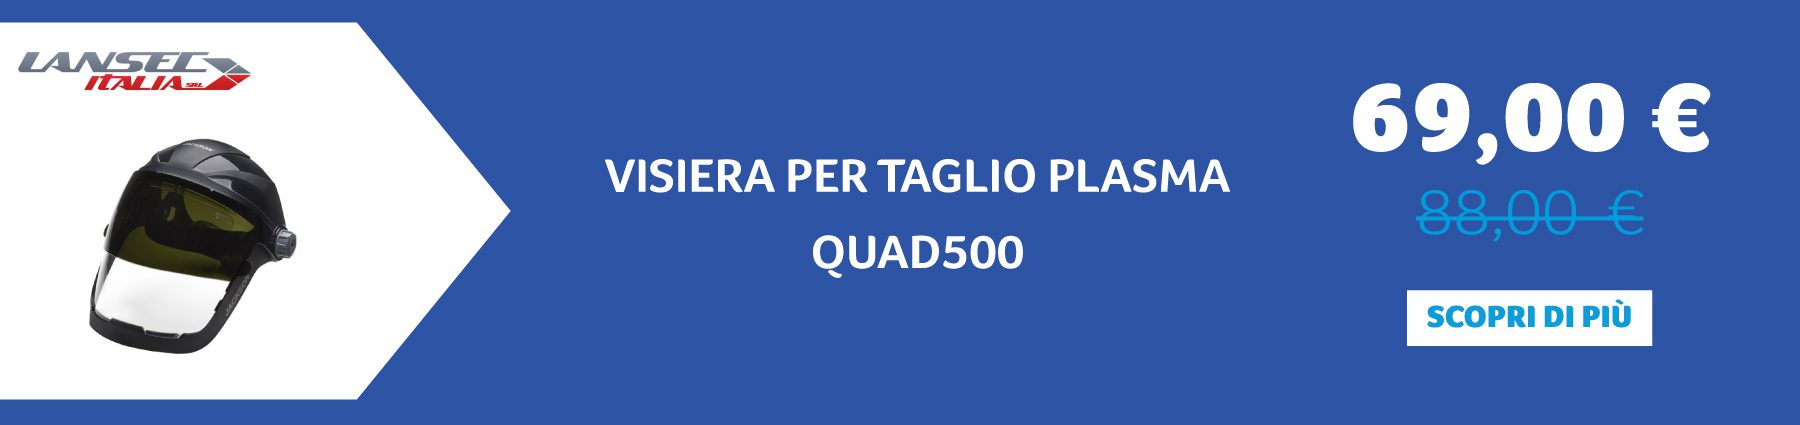 Lansec -  VISIERA PER TAGLIO PLASMA QUAD500  69,00 € anziché 88,00 €